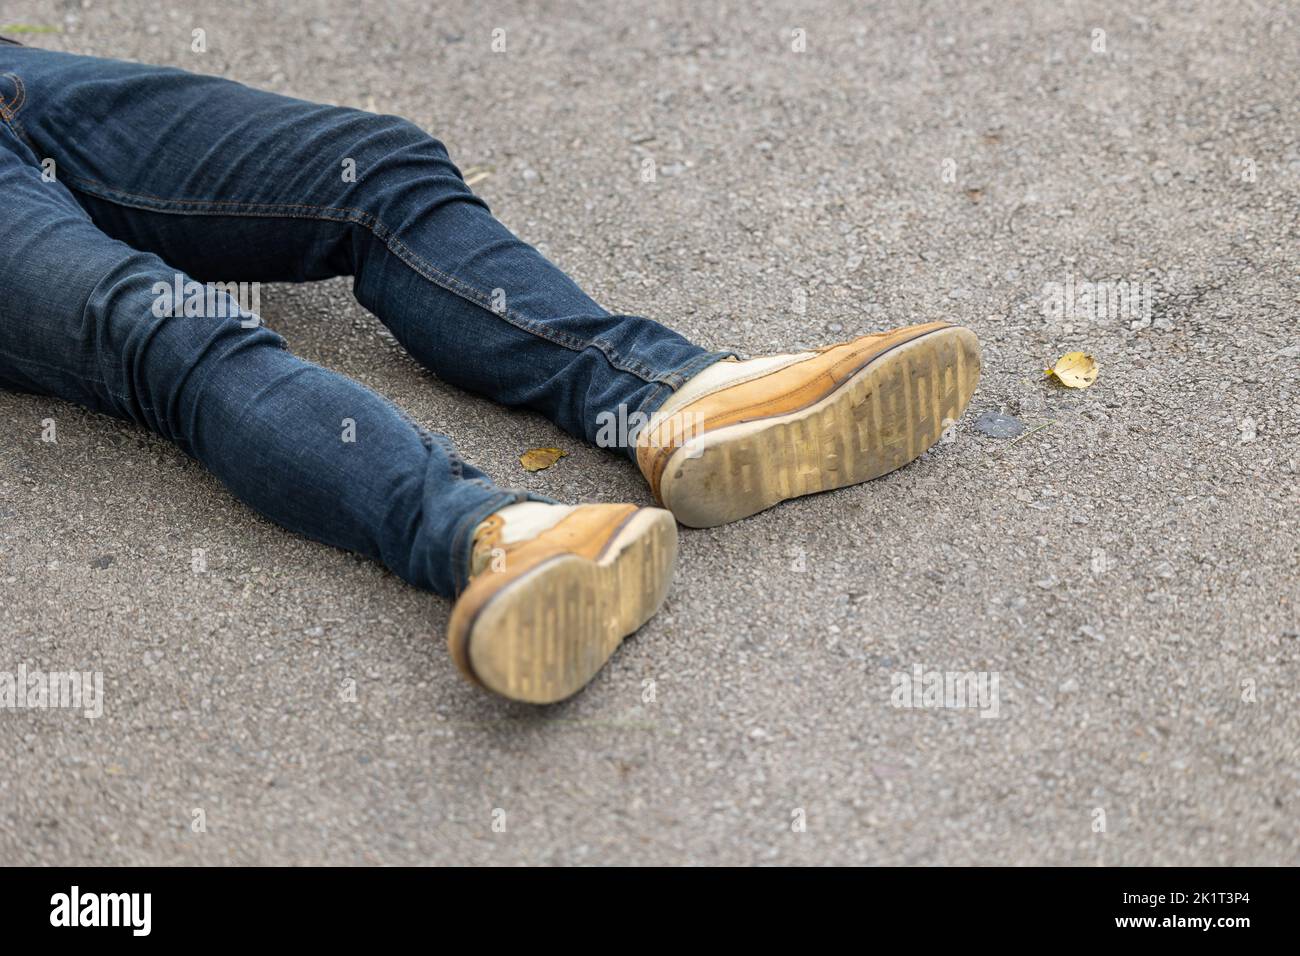 primer plano de la pierna masculina tumbada en carretera asfaltada. peatón atropellado por el concepto de accidente de coche. Foto de stock